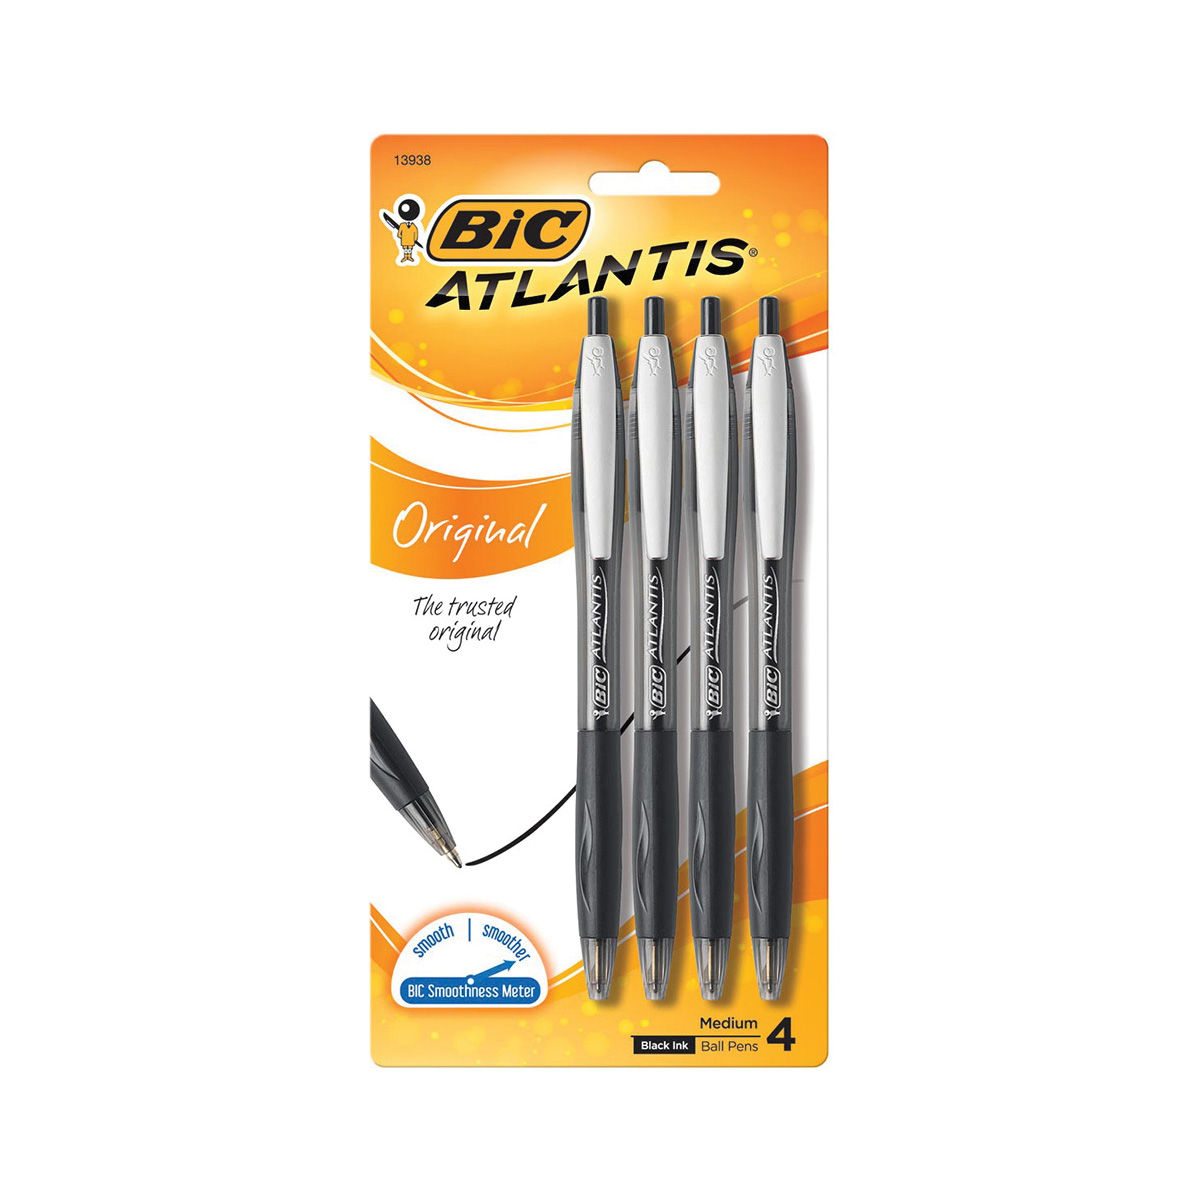 BIC Atlantis VCGP41BK Pen, Retractable, 1 mm Tip, Medium Tip, Black Ink, Oil-Based Ink, Contoured Grip - 2